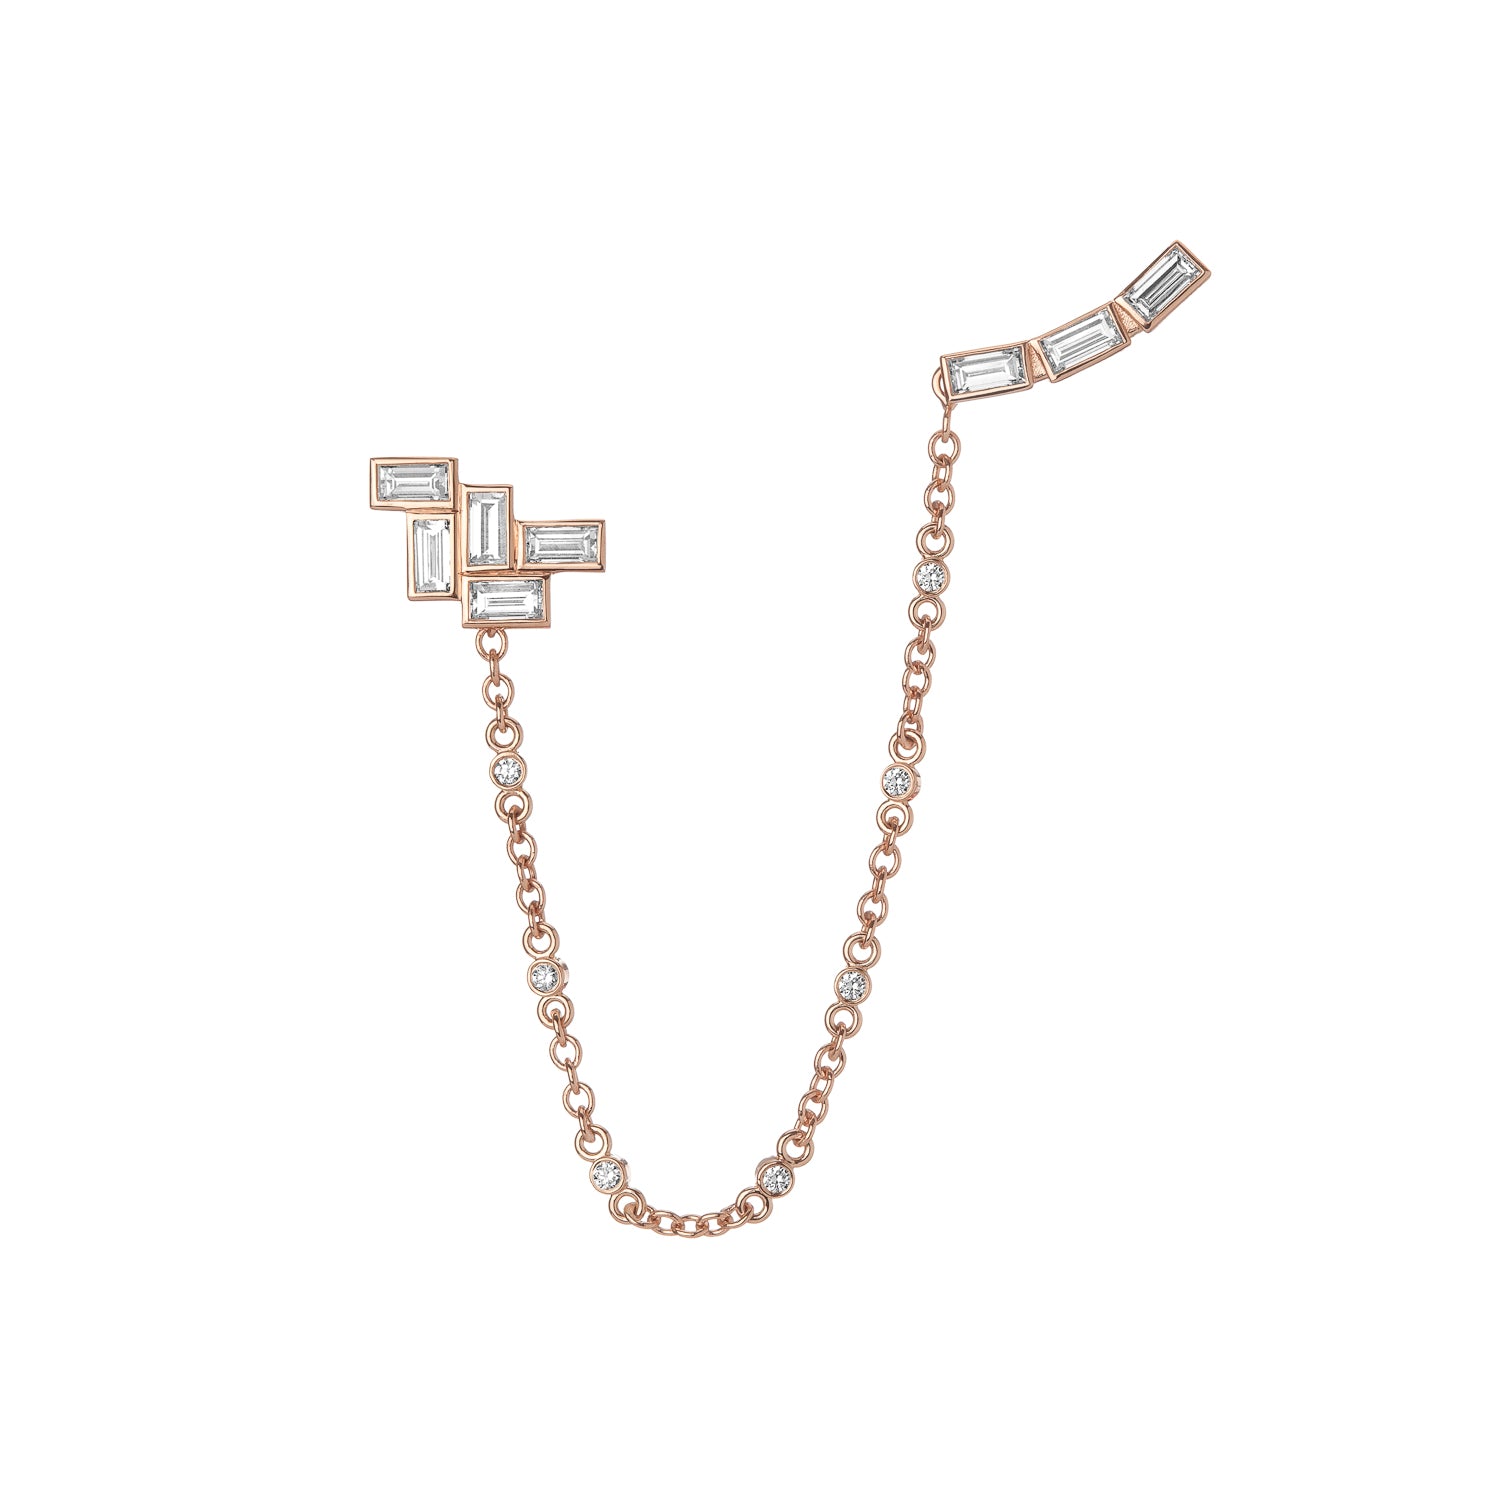 Shahla Karimi Mid-Century Falling Water Ear Chain Long 14K Rose Gold With Earrings